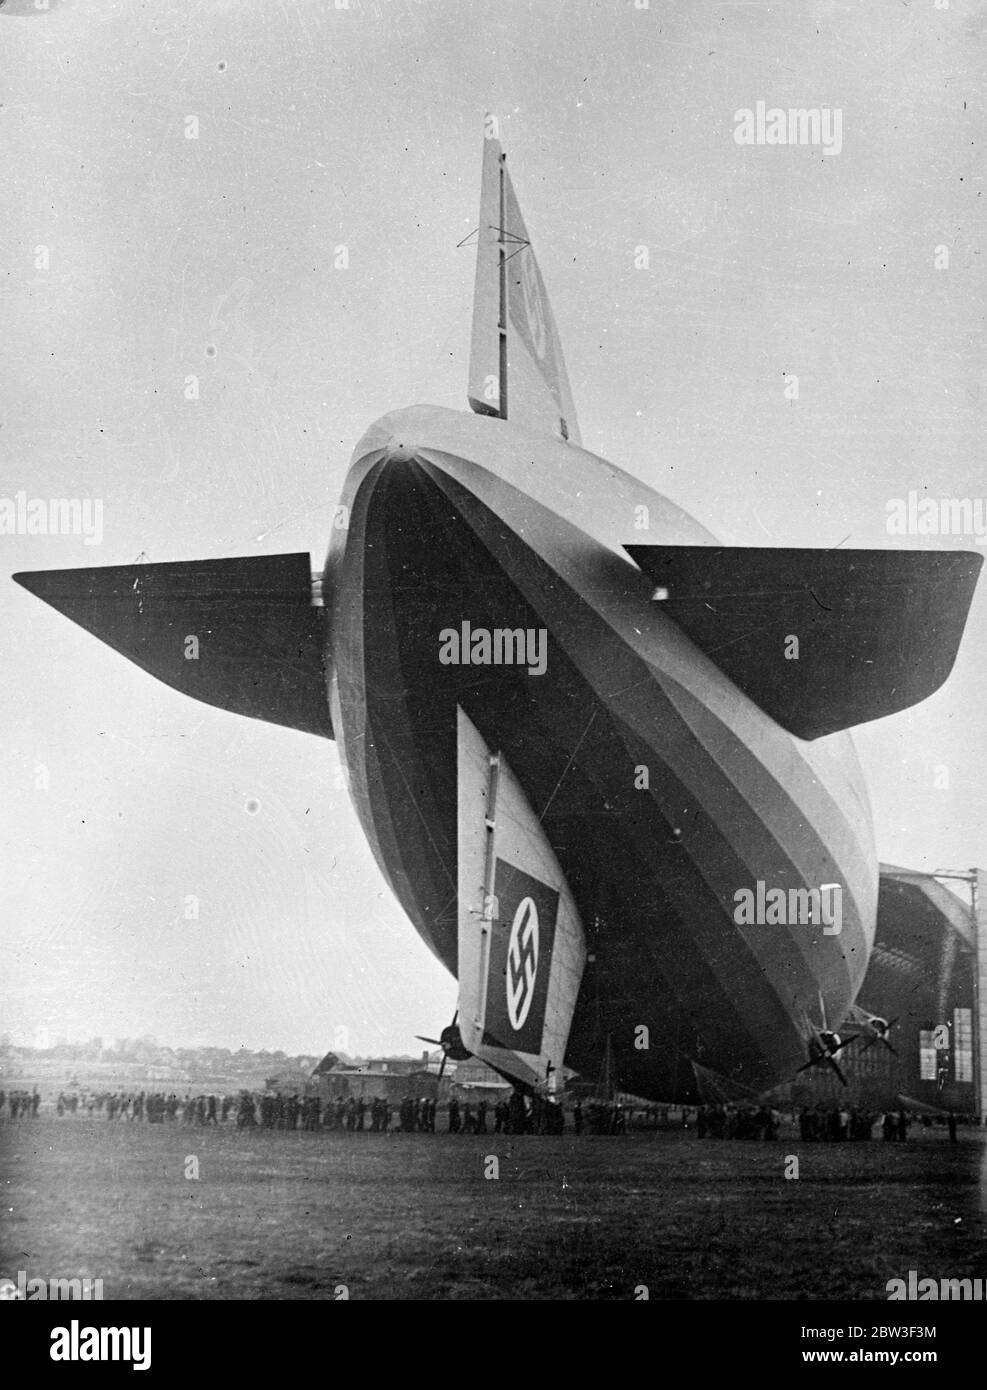 Der neue Zeppelin Deutschlands hat weitere Probeflüge. Deutschlands neuer Zeppelin Präsident Hindenburg, das neueste Luftschiff der Welt, hat weitere Probeflüge in Friedrichshafen gemacht, die sich auf den transatlantischen Dienst gestellt haben. Sie hat achtzig Passagiere und Besatzung und Experten des deutschen Luftministeriums aufgenommen. Foto zeigt, dass die Präsidentin Hindenburg nach einem Probeflug in ihren Hangar gelenkt wird. März 1936 Stockfoto